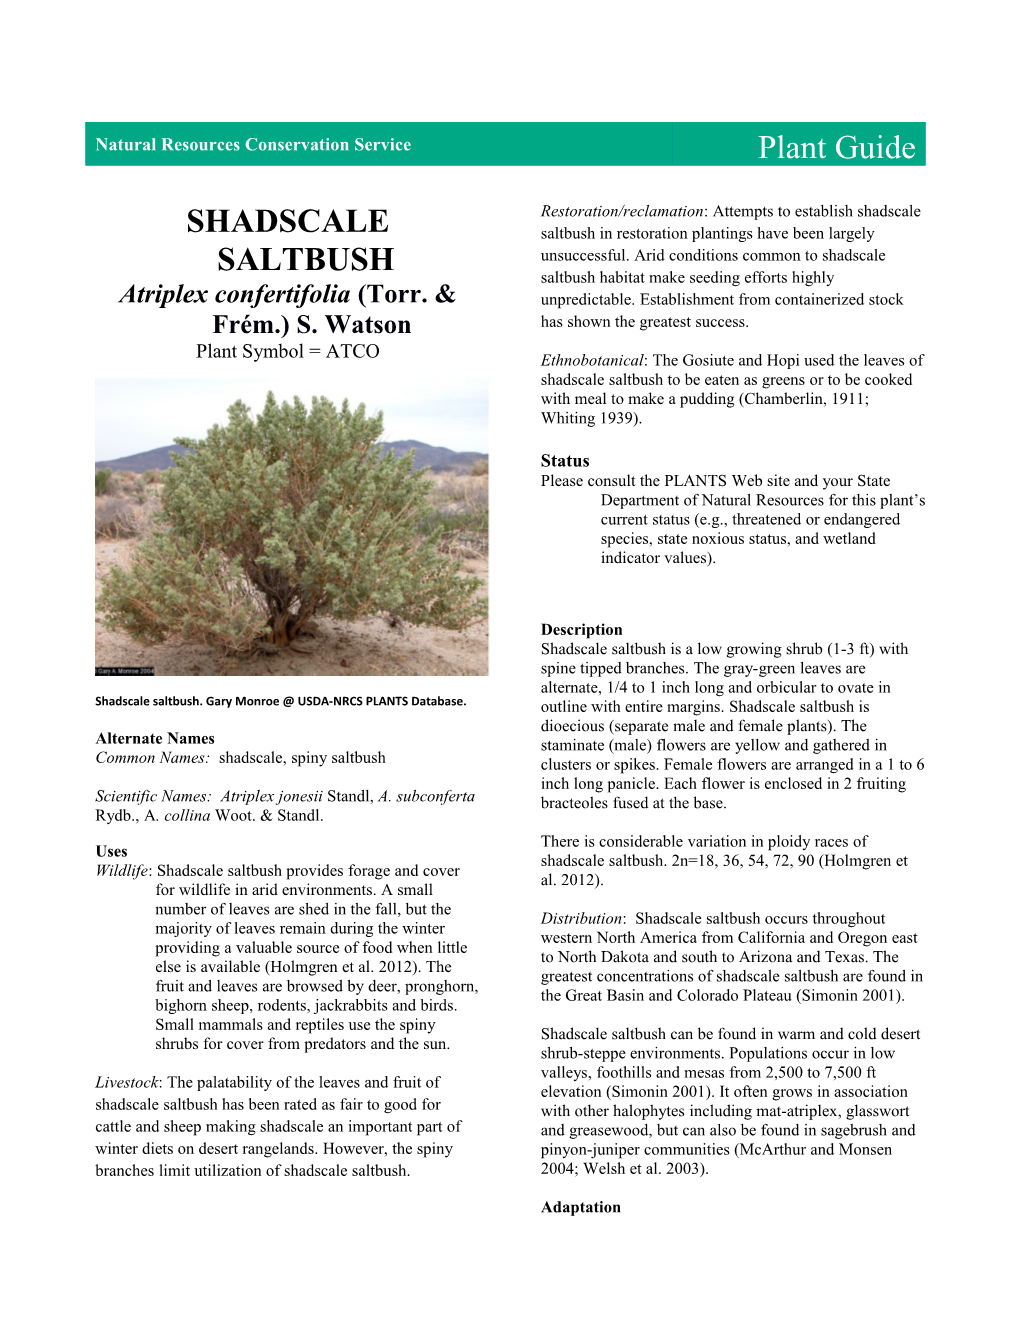 Plant Guide for Shadscale Saltbush (Atriplex Confertifolia)